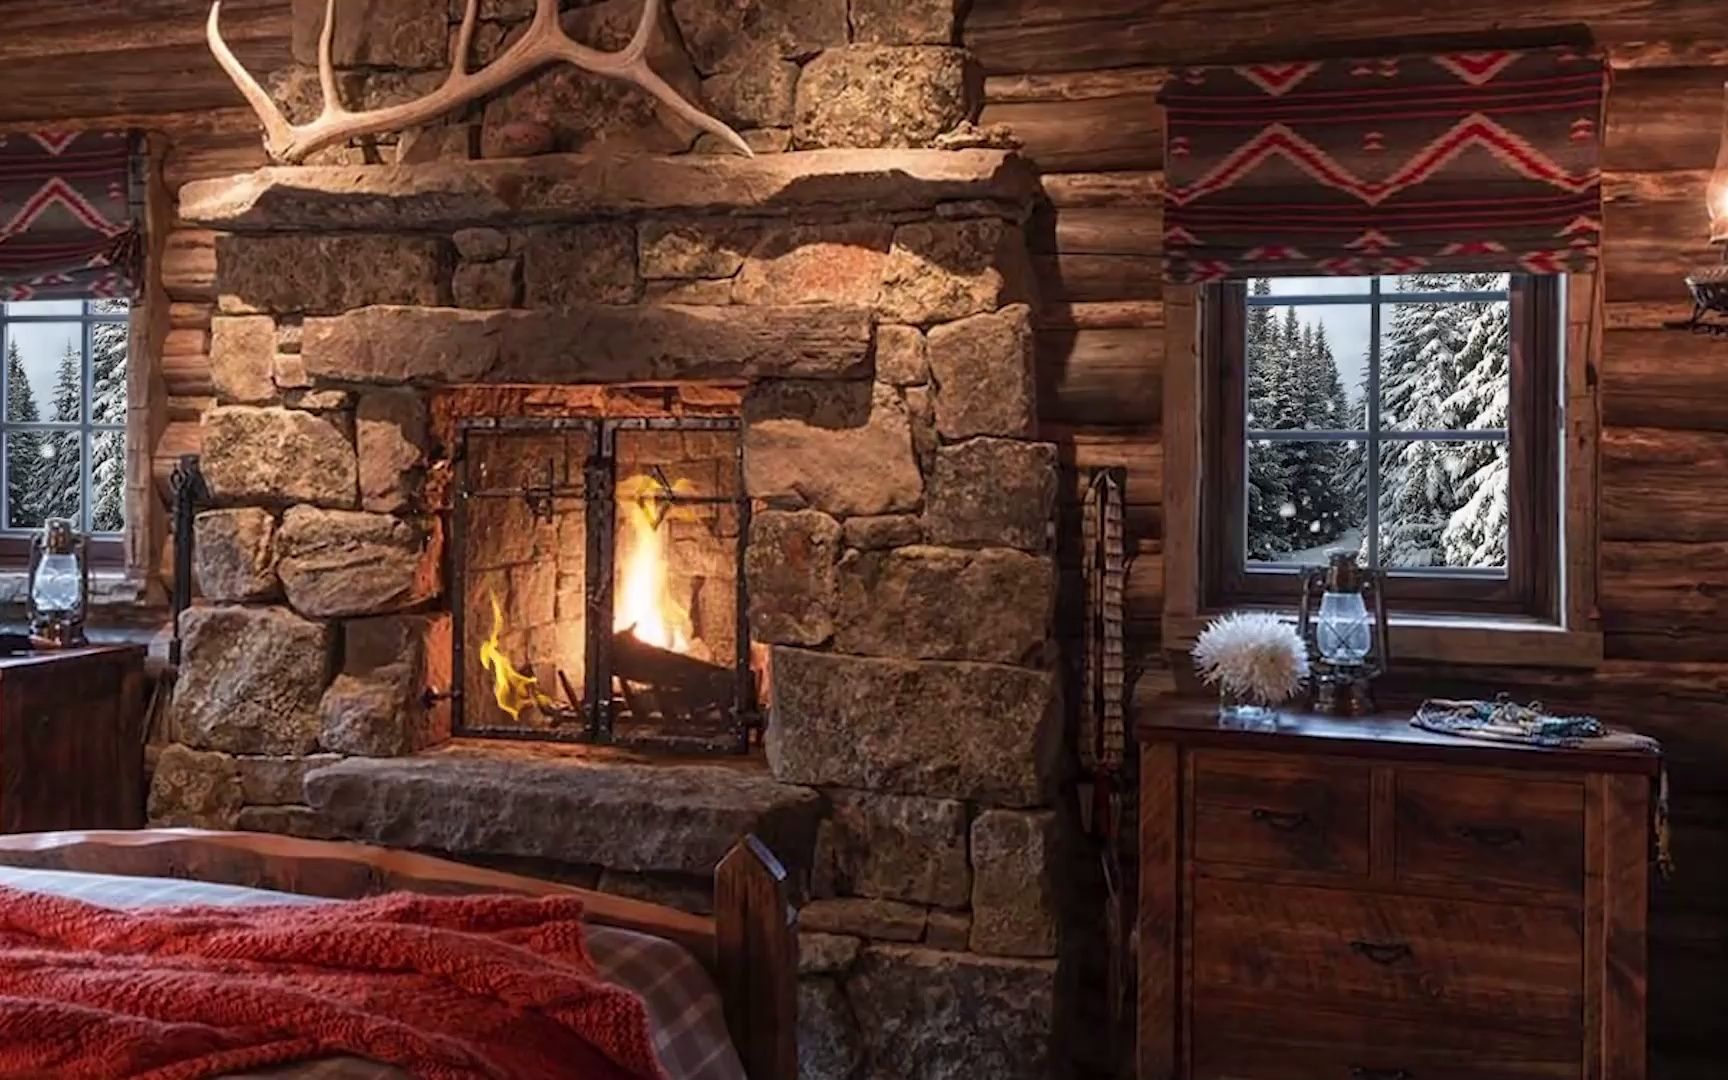 【白噪音】3小时丨陪你学习丨冬天的小房子-放松的壁炉-舒适的小屋环境-